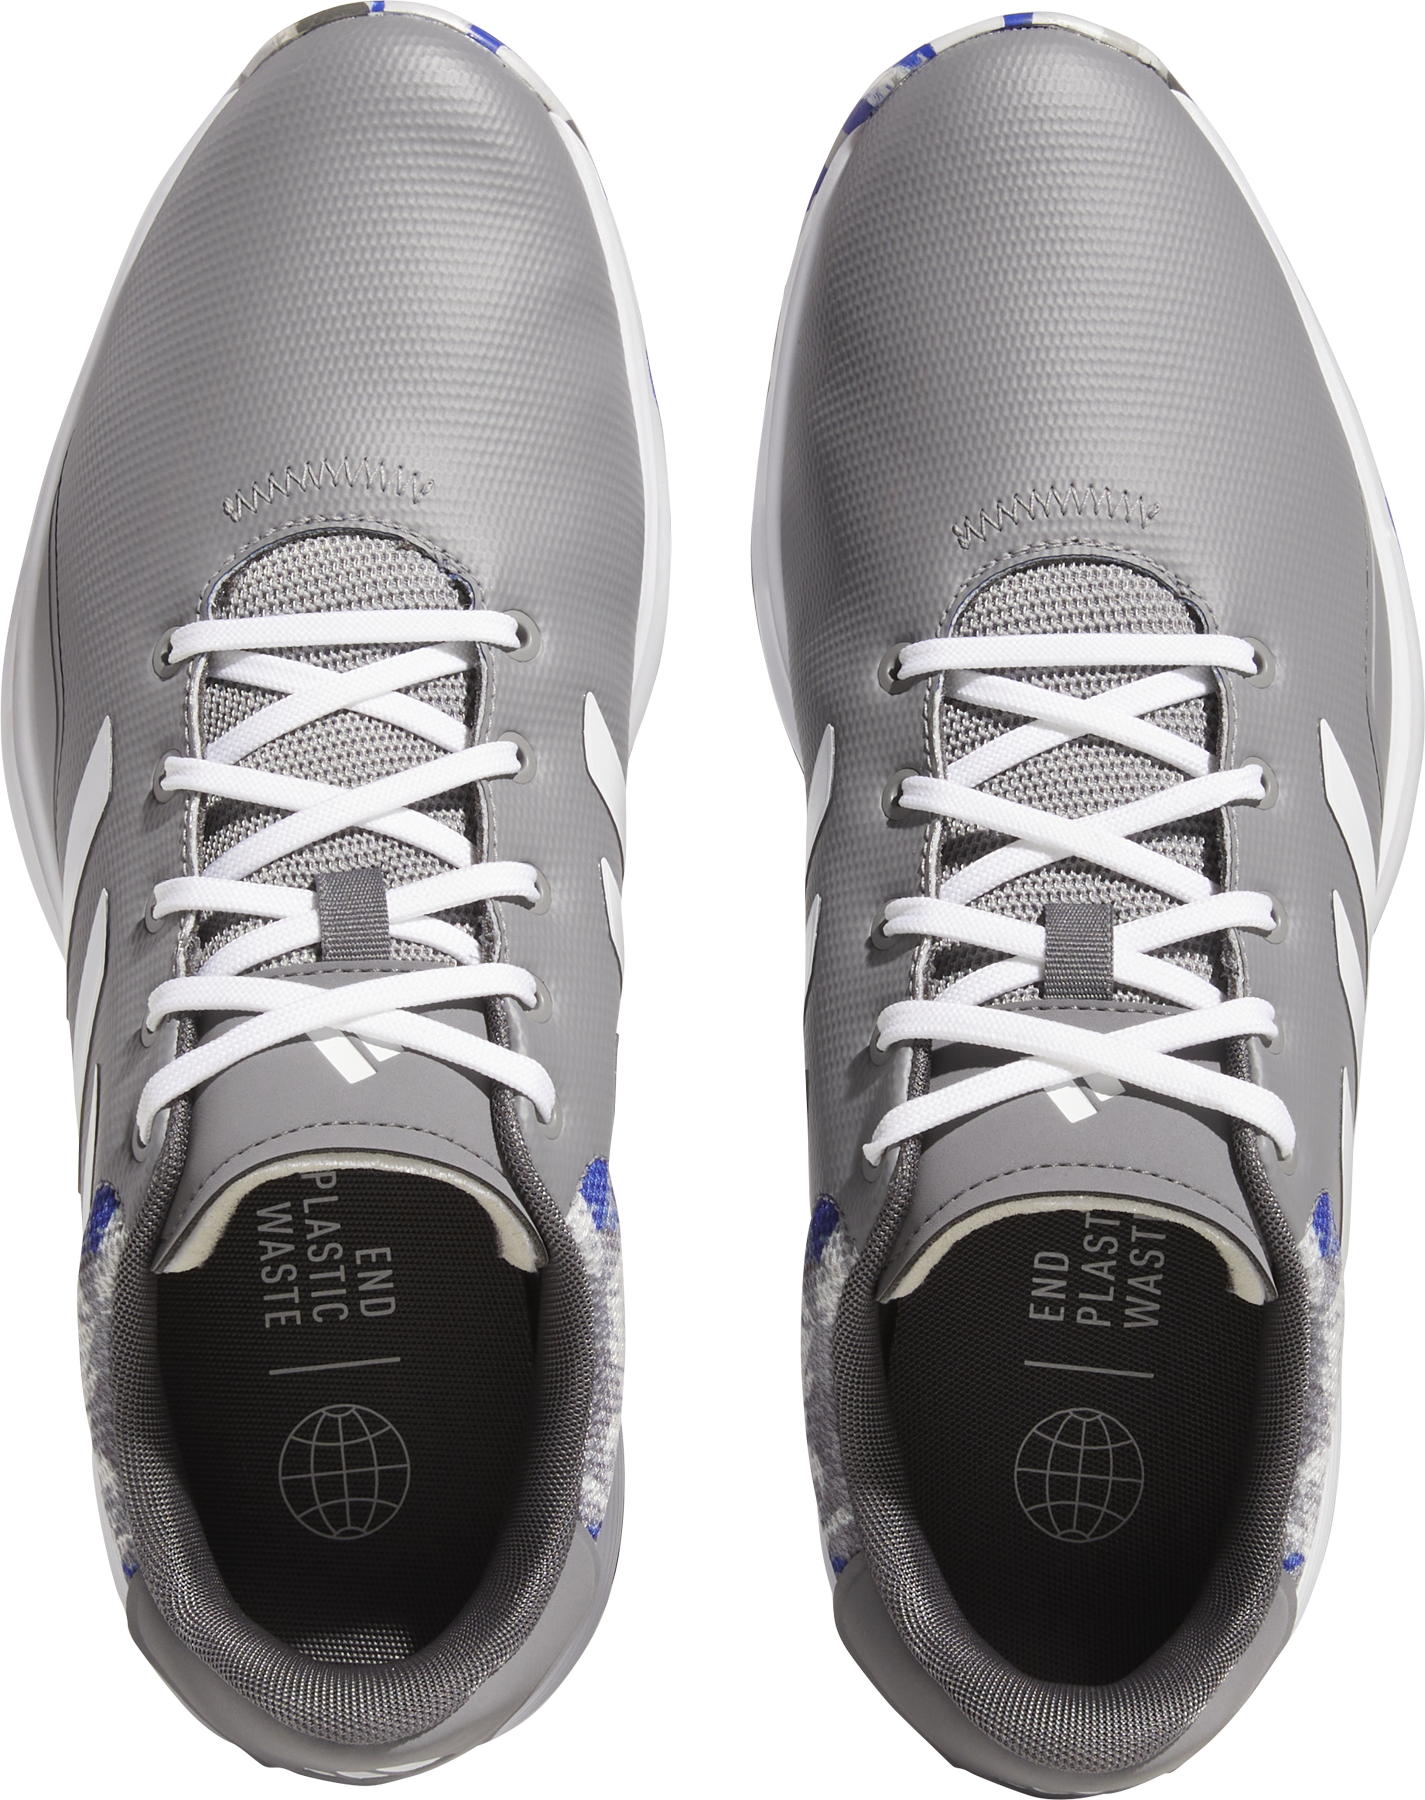 adidas S2G 23 Golfschuh, grey/white/blue